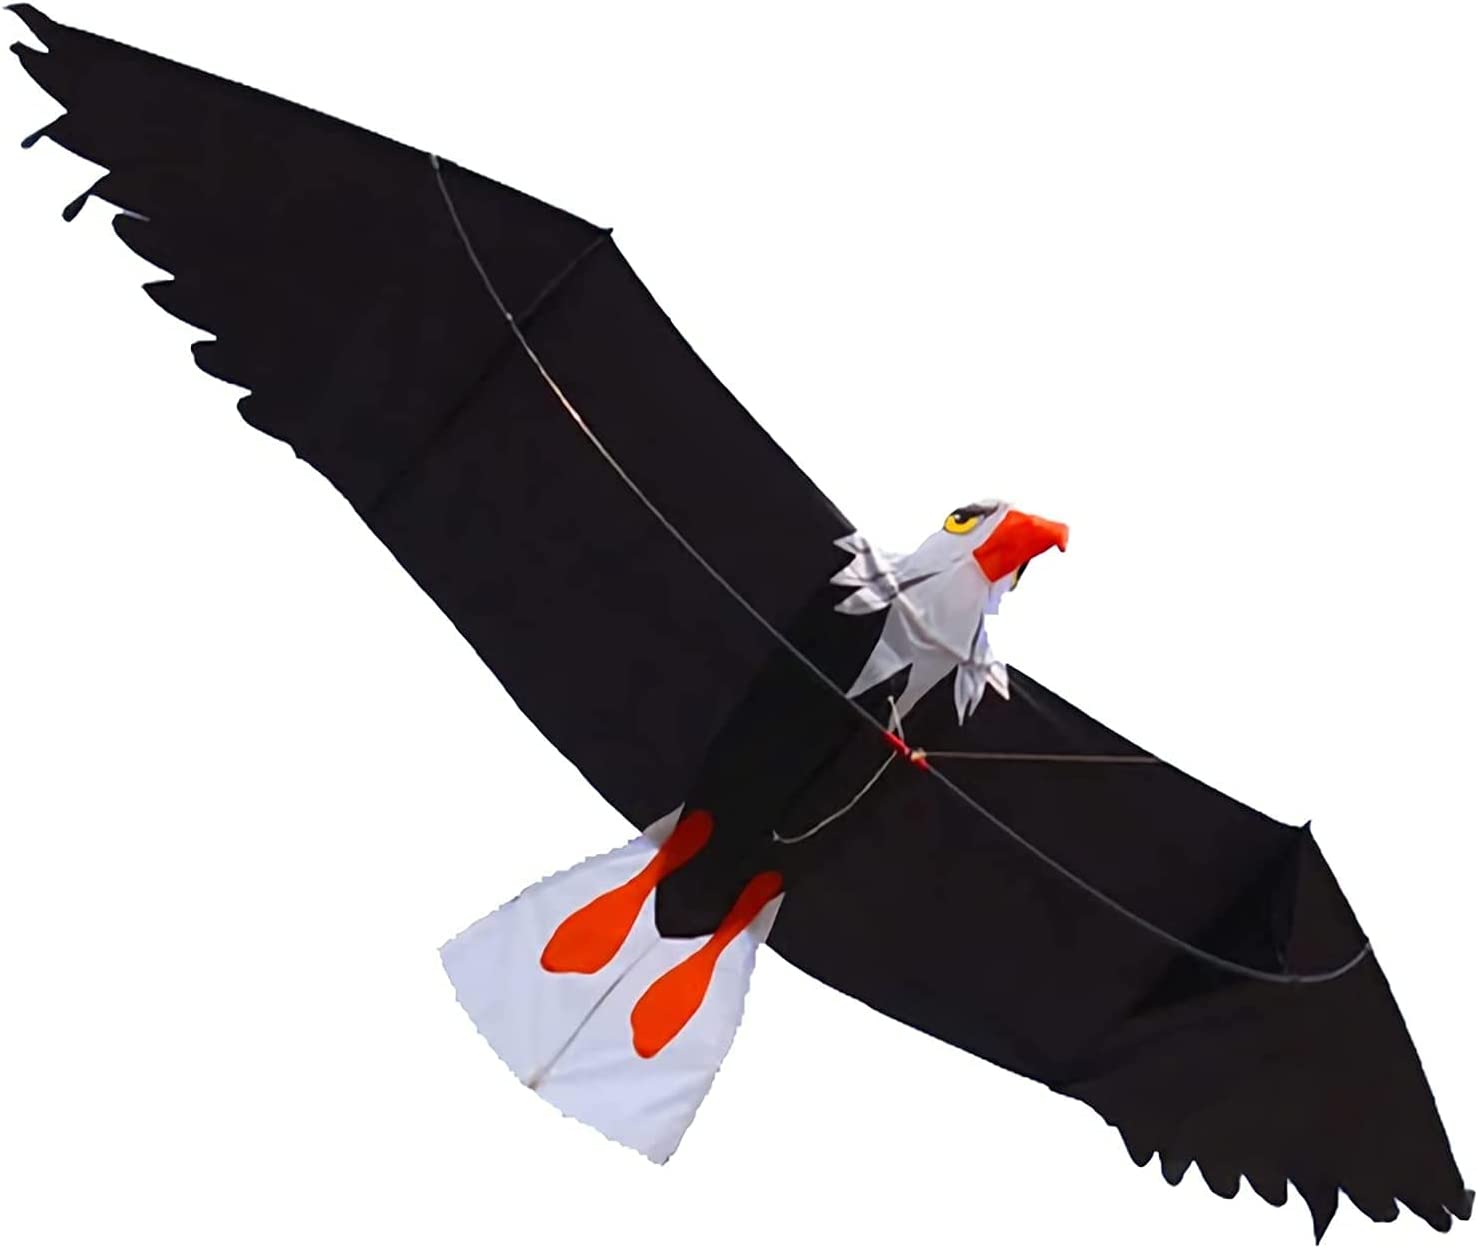 Drachen, Einleiner, Kite für Kind und Erwachsene *Adler 3D* inkl. 30m Leine, 200x70cm